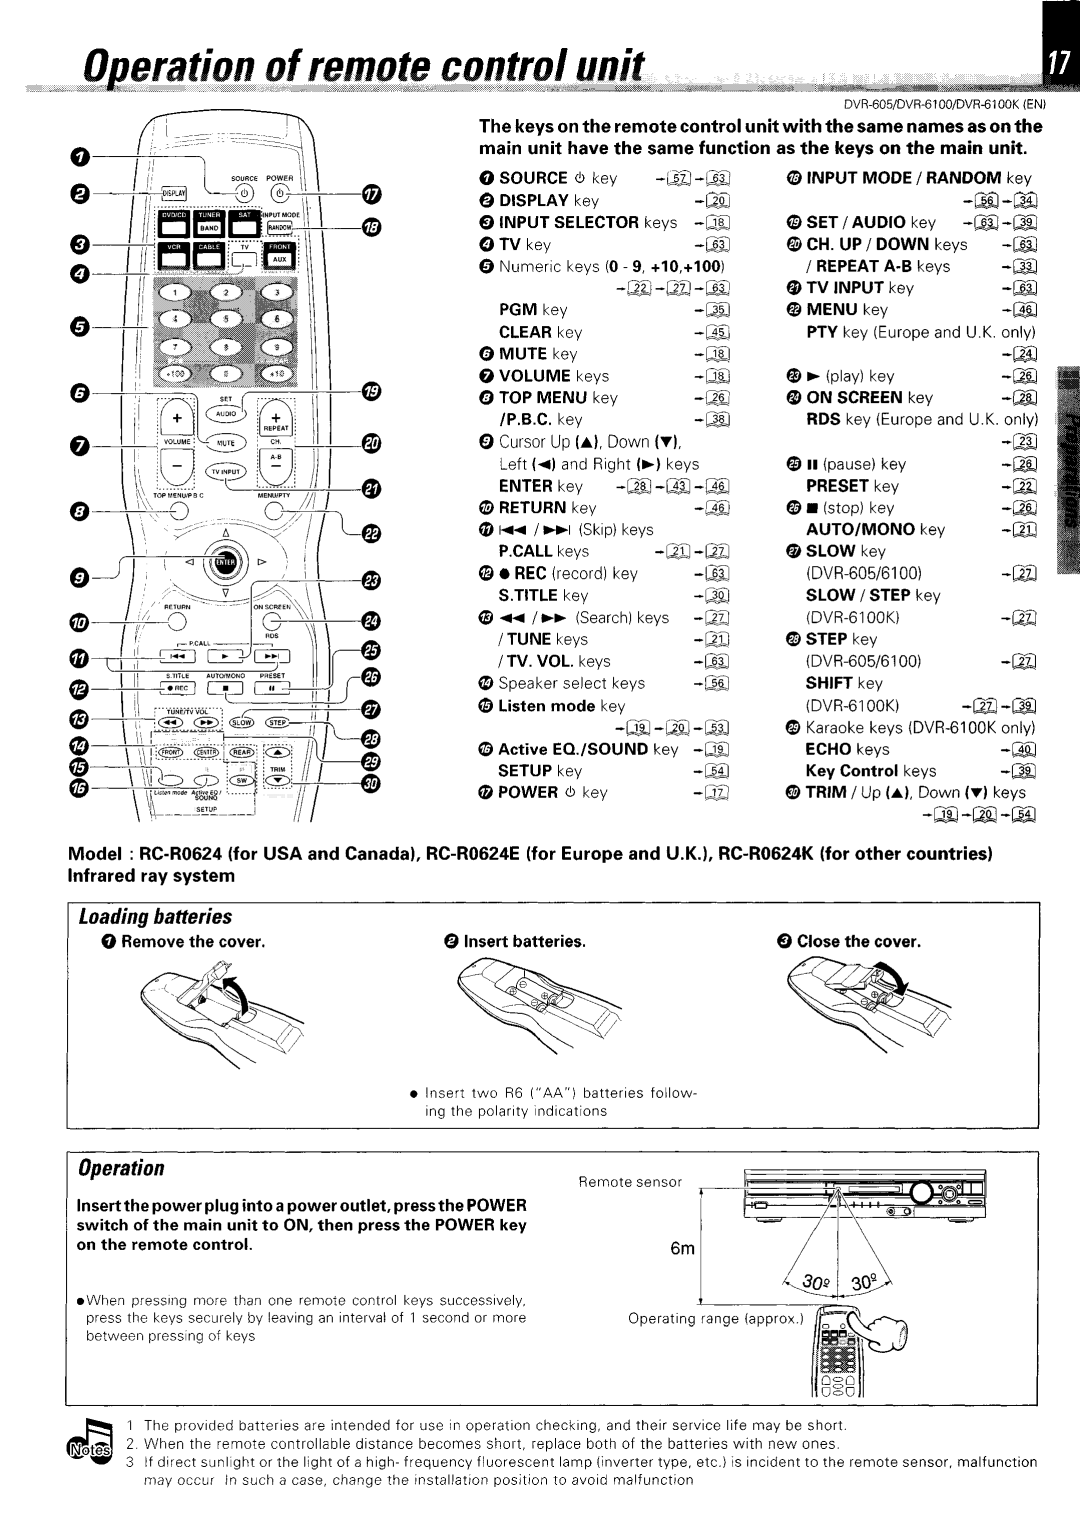 Kenwood DVR-6100K instruction manual Loading batteries, Operation, a -@ 